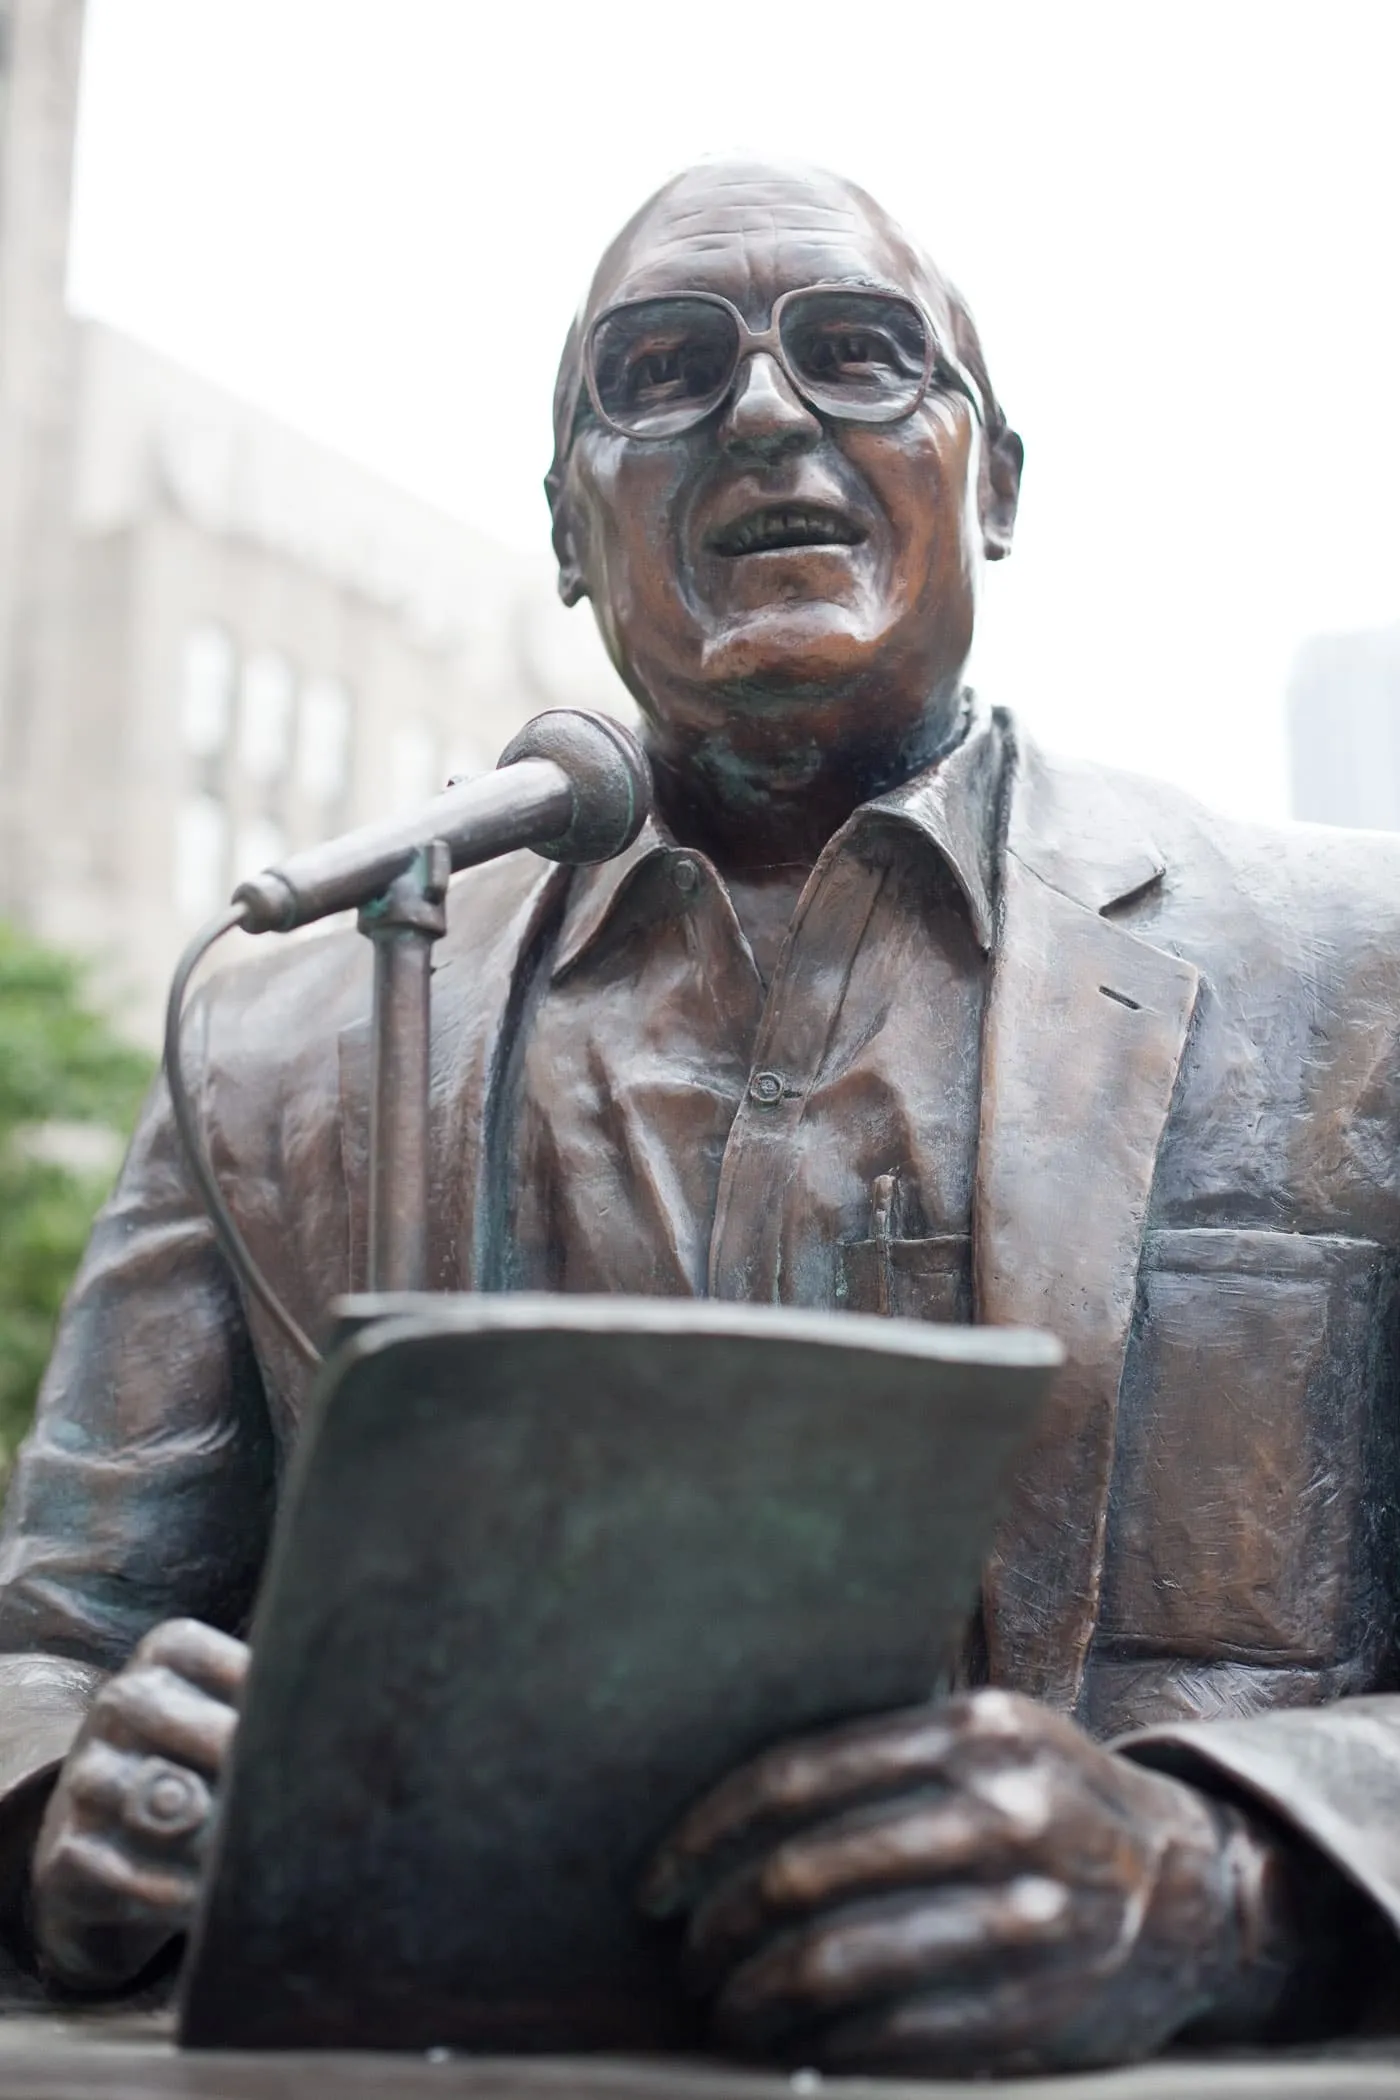 Jack Brickhouse Memorial Statue in Chicago, Illinois.